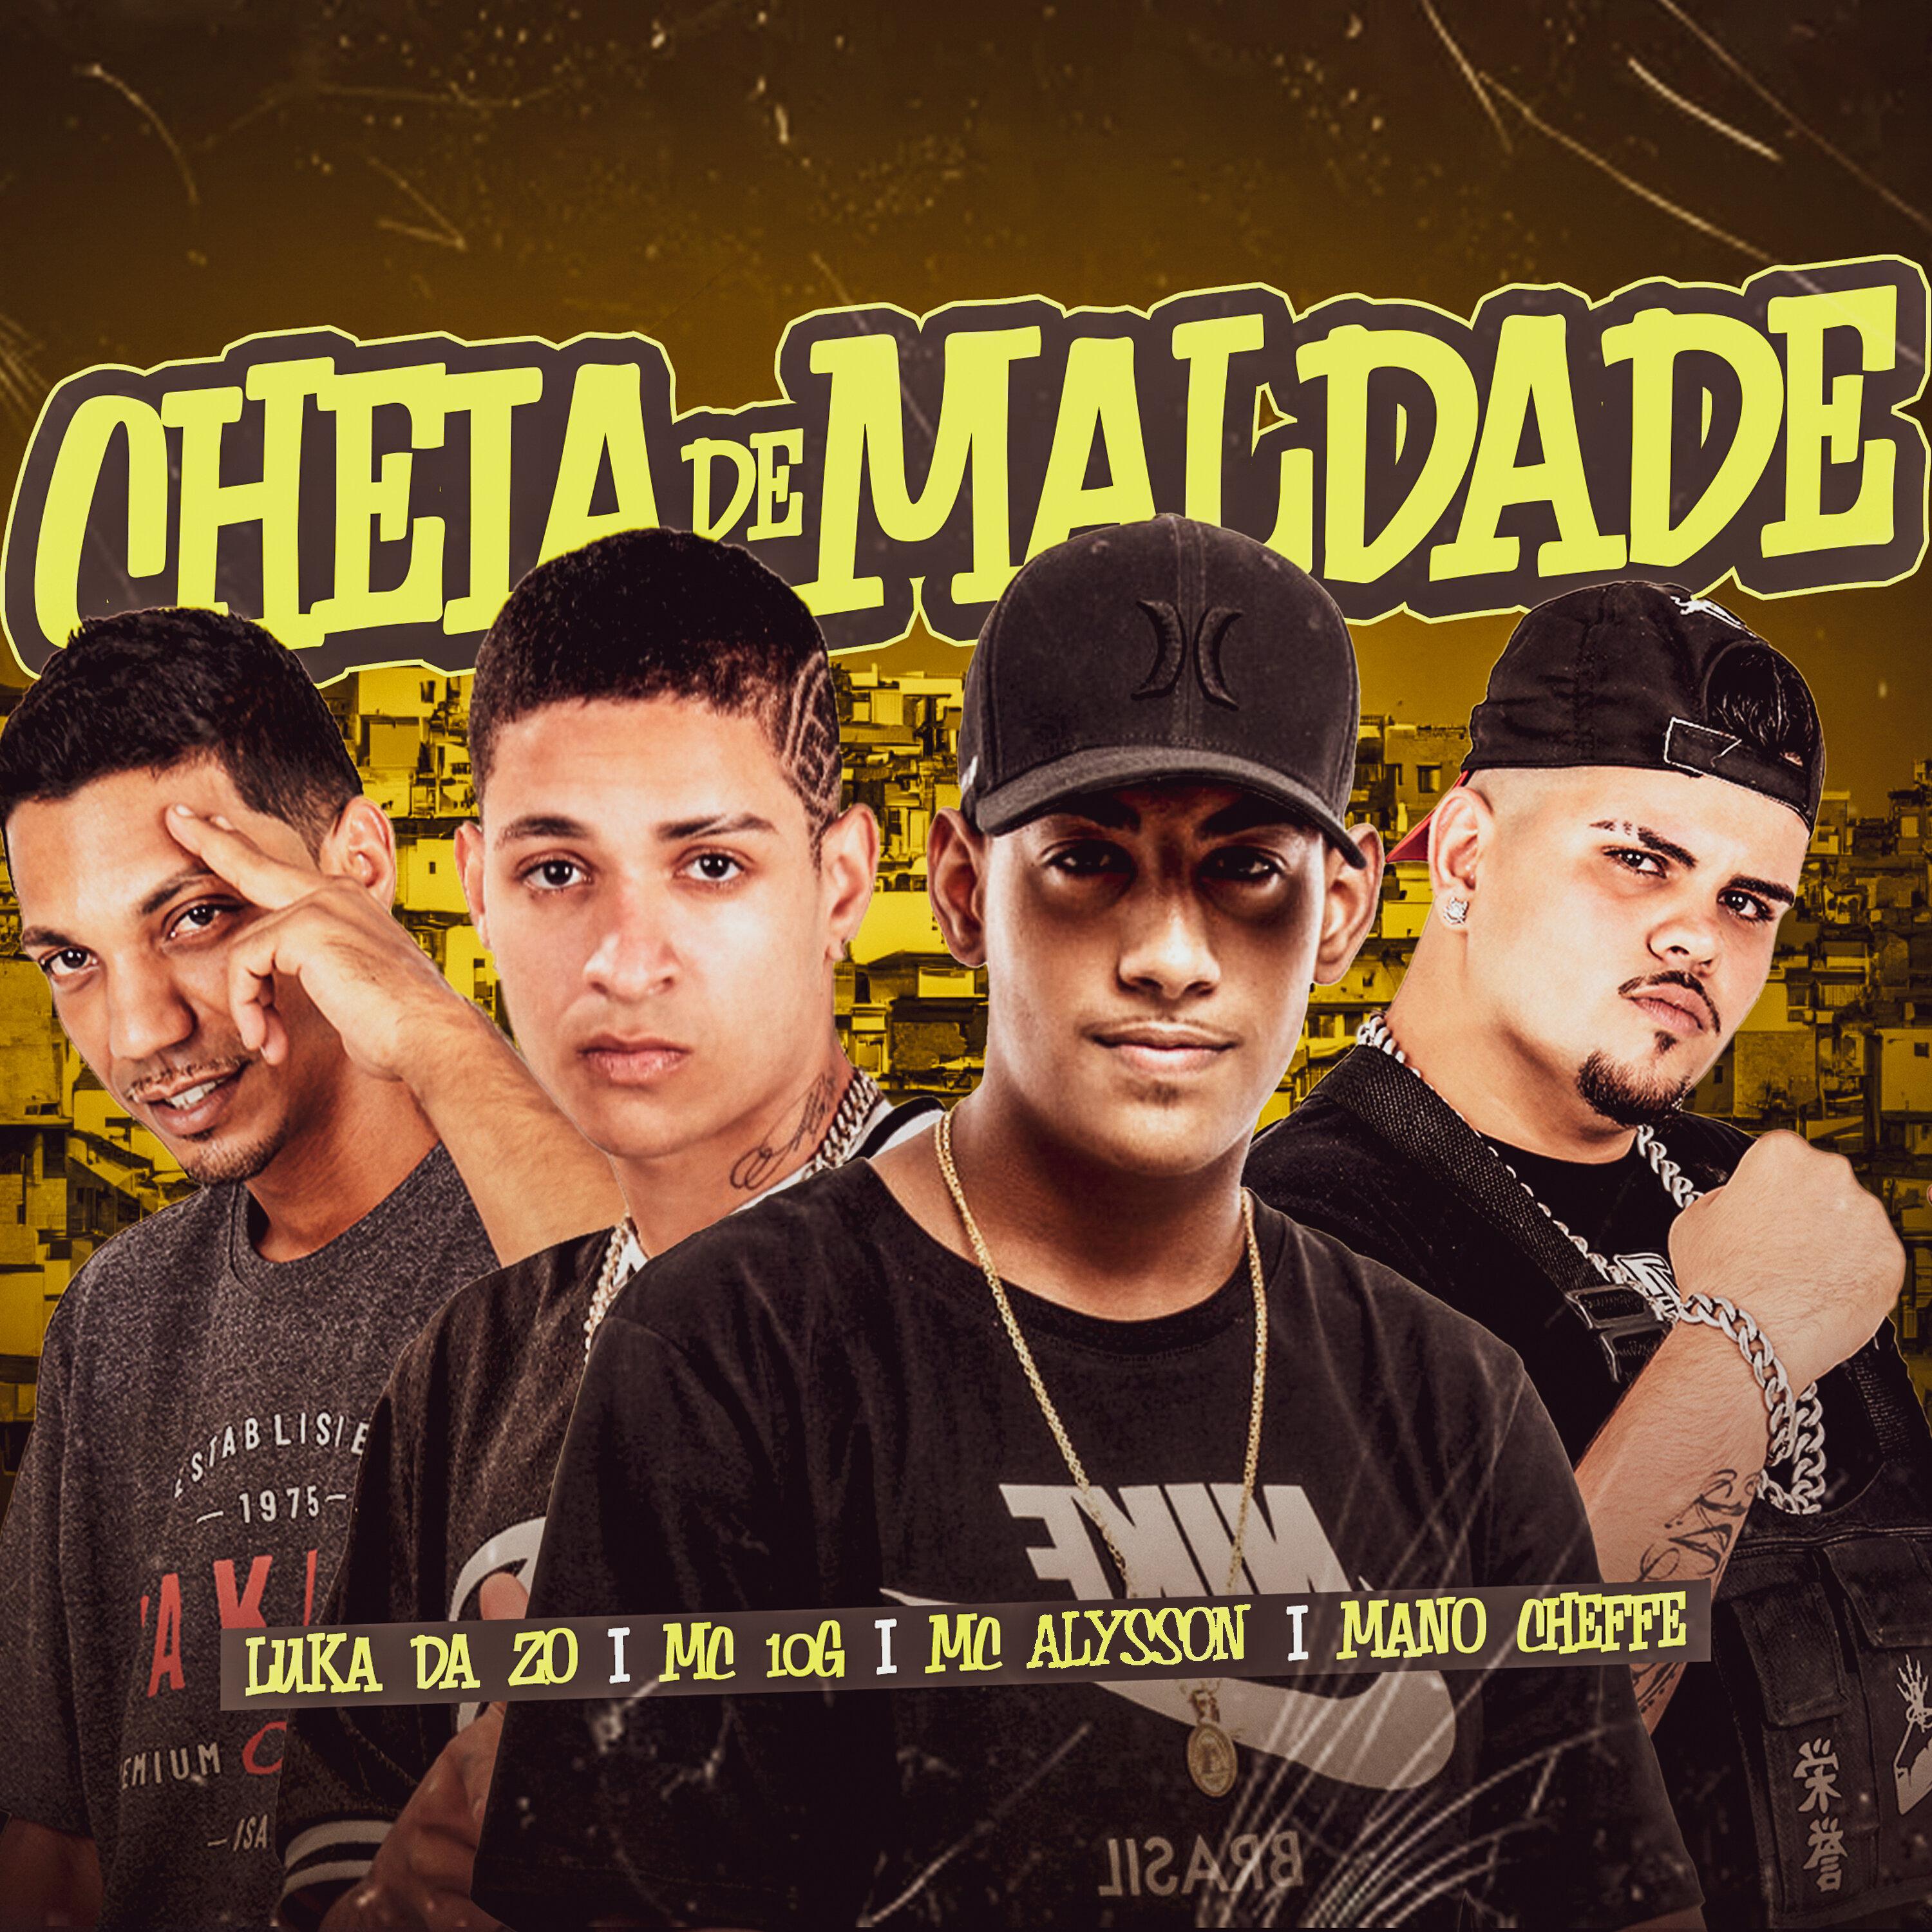 Luka da Z.O - Cheia de Maldade (feat. Mc Alysson)